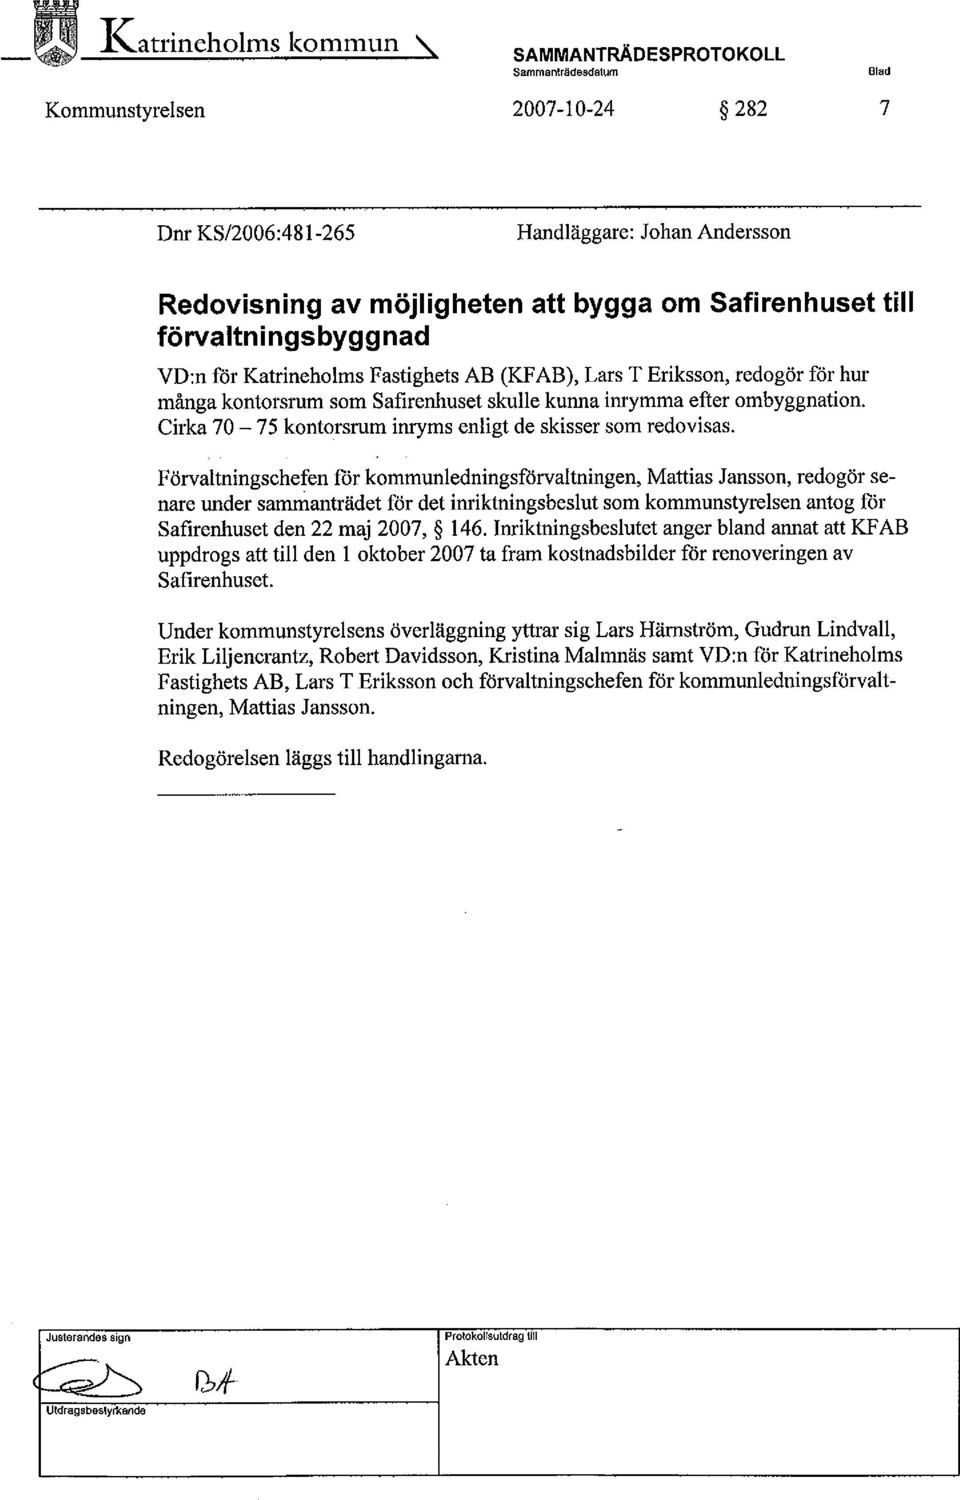 Förvaltningschefen mr kommunledningsförvaltningen, Mattias Jansson, redogör senare under sainanträdet för det inriktningsbeslut som kommunstyrelsen antog for Safirenhuset den 22 maj 2007, 146.